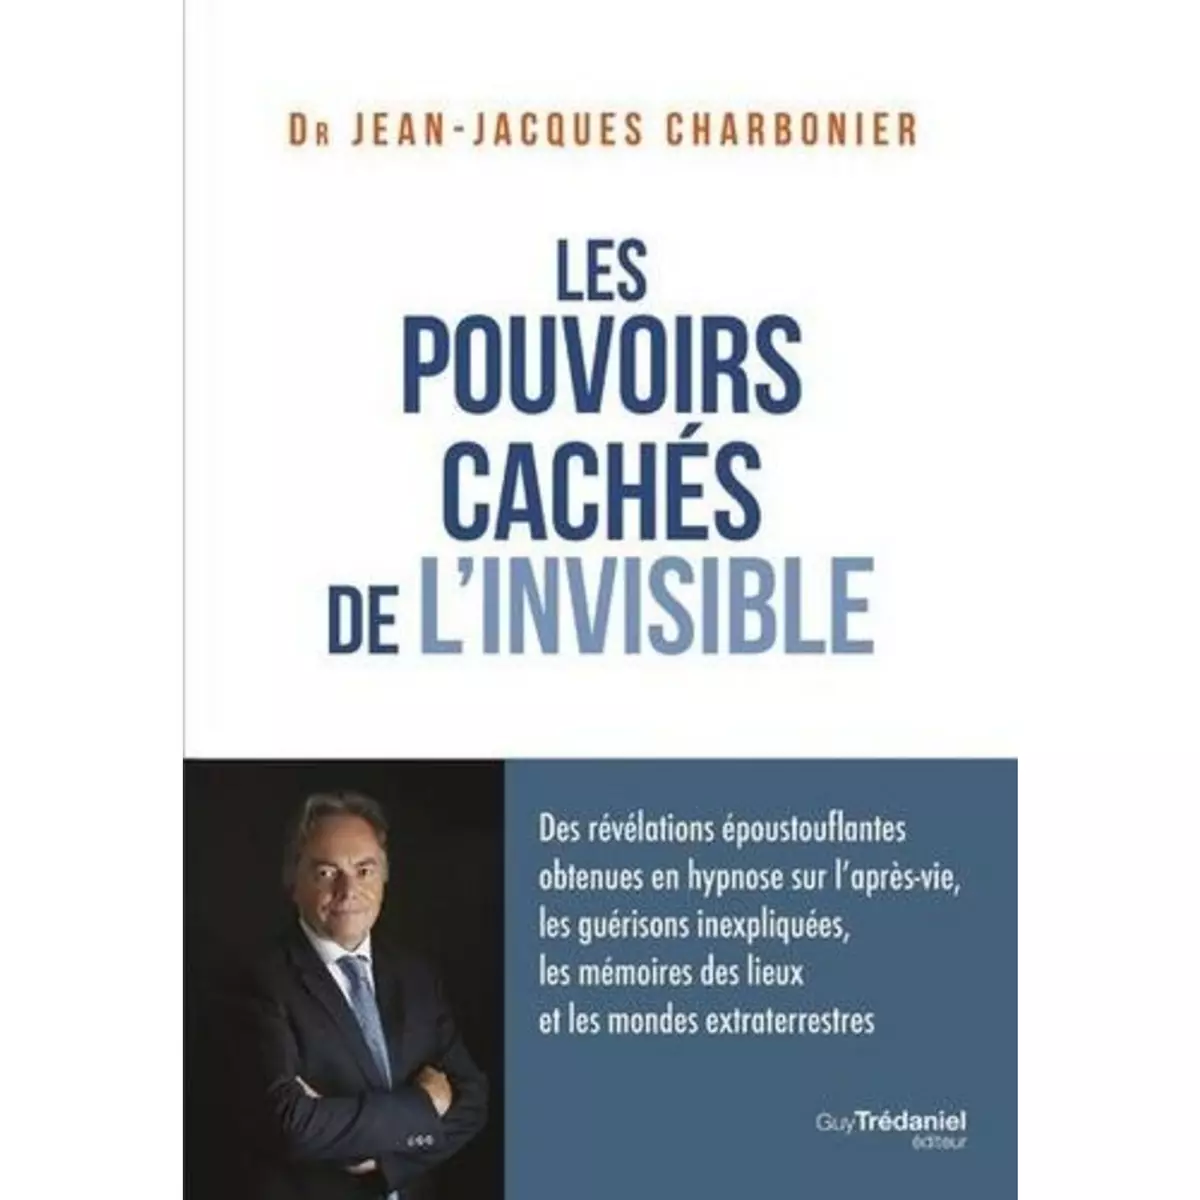  LES POUVOIRS CACHES DE L'INVISIBLE. DES REVELATIONS EPOUSTOUFLANTES OBTENUES EN HYPNOSE SUR L'APRES-VIE, LES GUERISONS INEXPLIQUEES, LES MEMOIRES DES LIEUX ET LES MONDES EXTRATERRESTRES, Charbonier Jean-Jacques